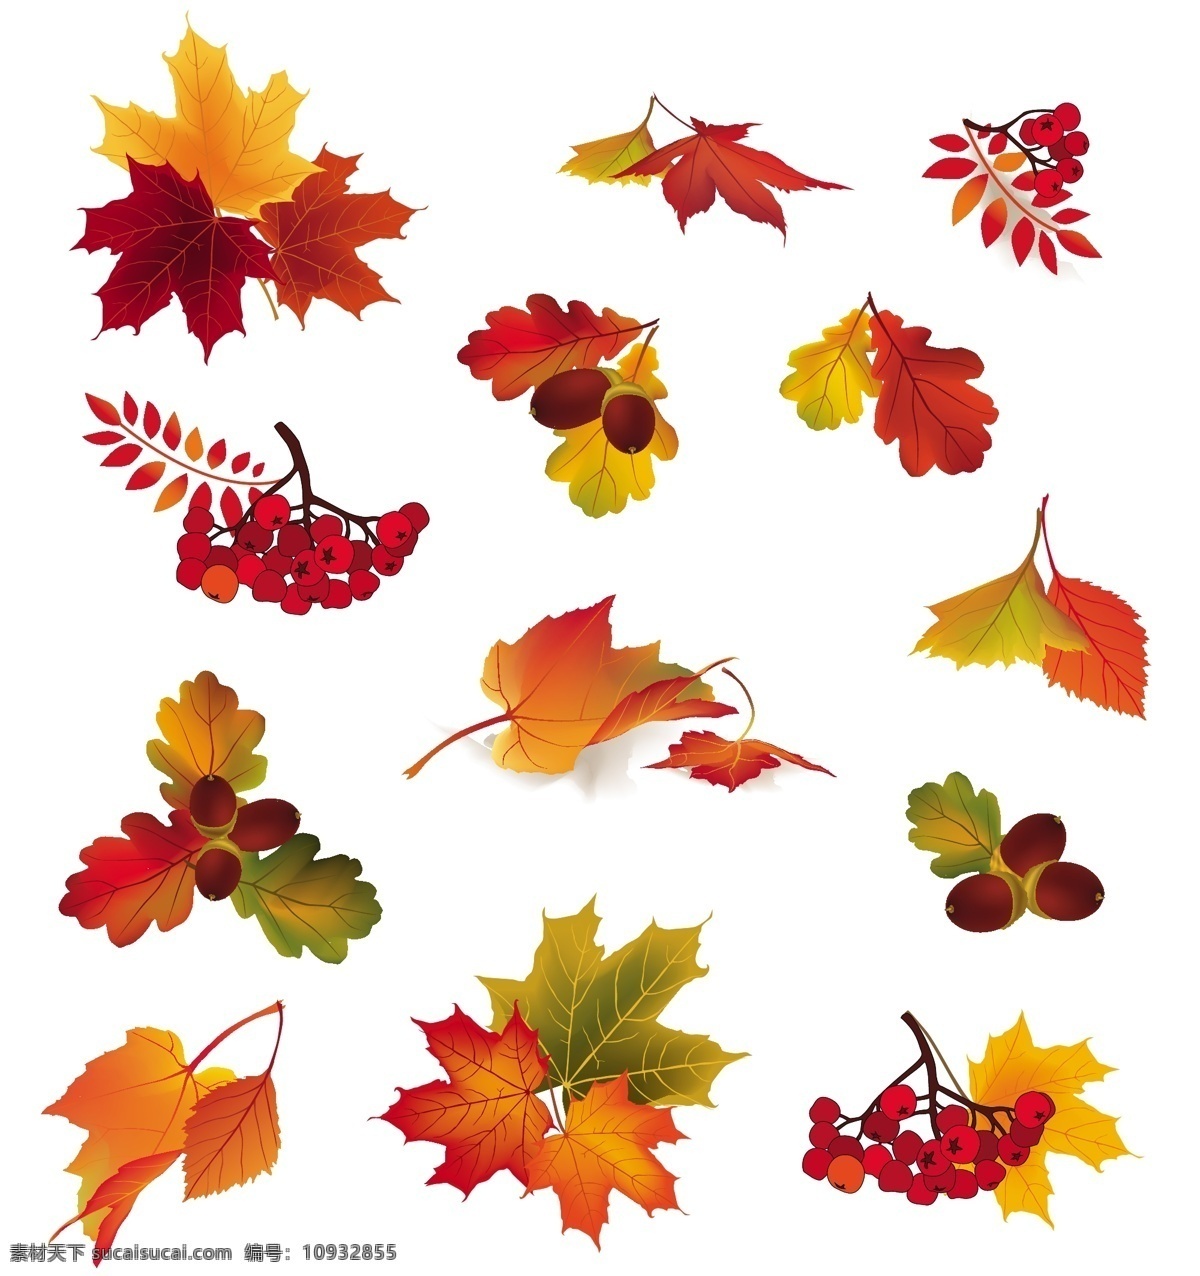 秋天 树叶 水果 矢量 秋天的落叶 矢量素材 矢量植物 离开 psd秋天 矢量图 其他矢量图